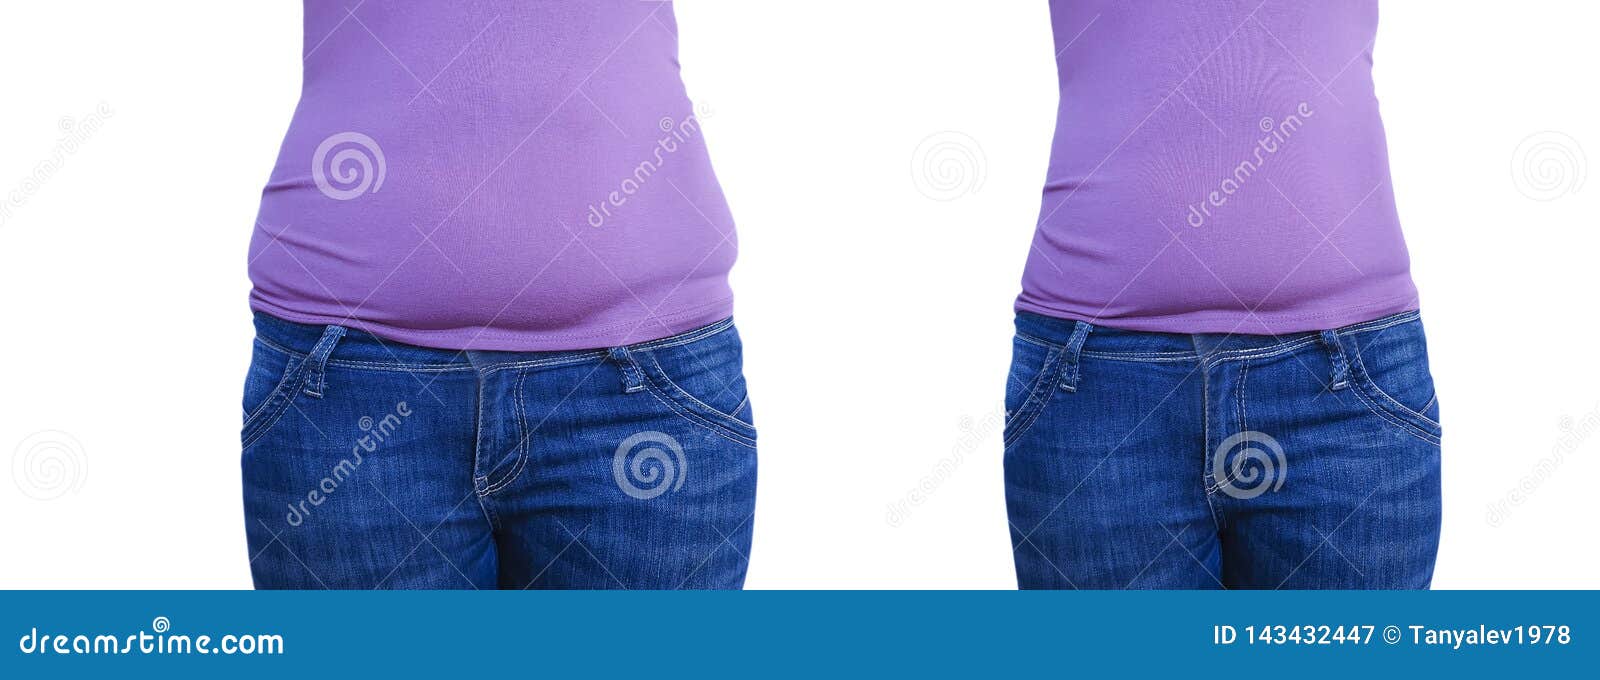 δίαιτα και αθλητική απώλεια βάρους)